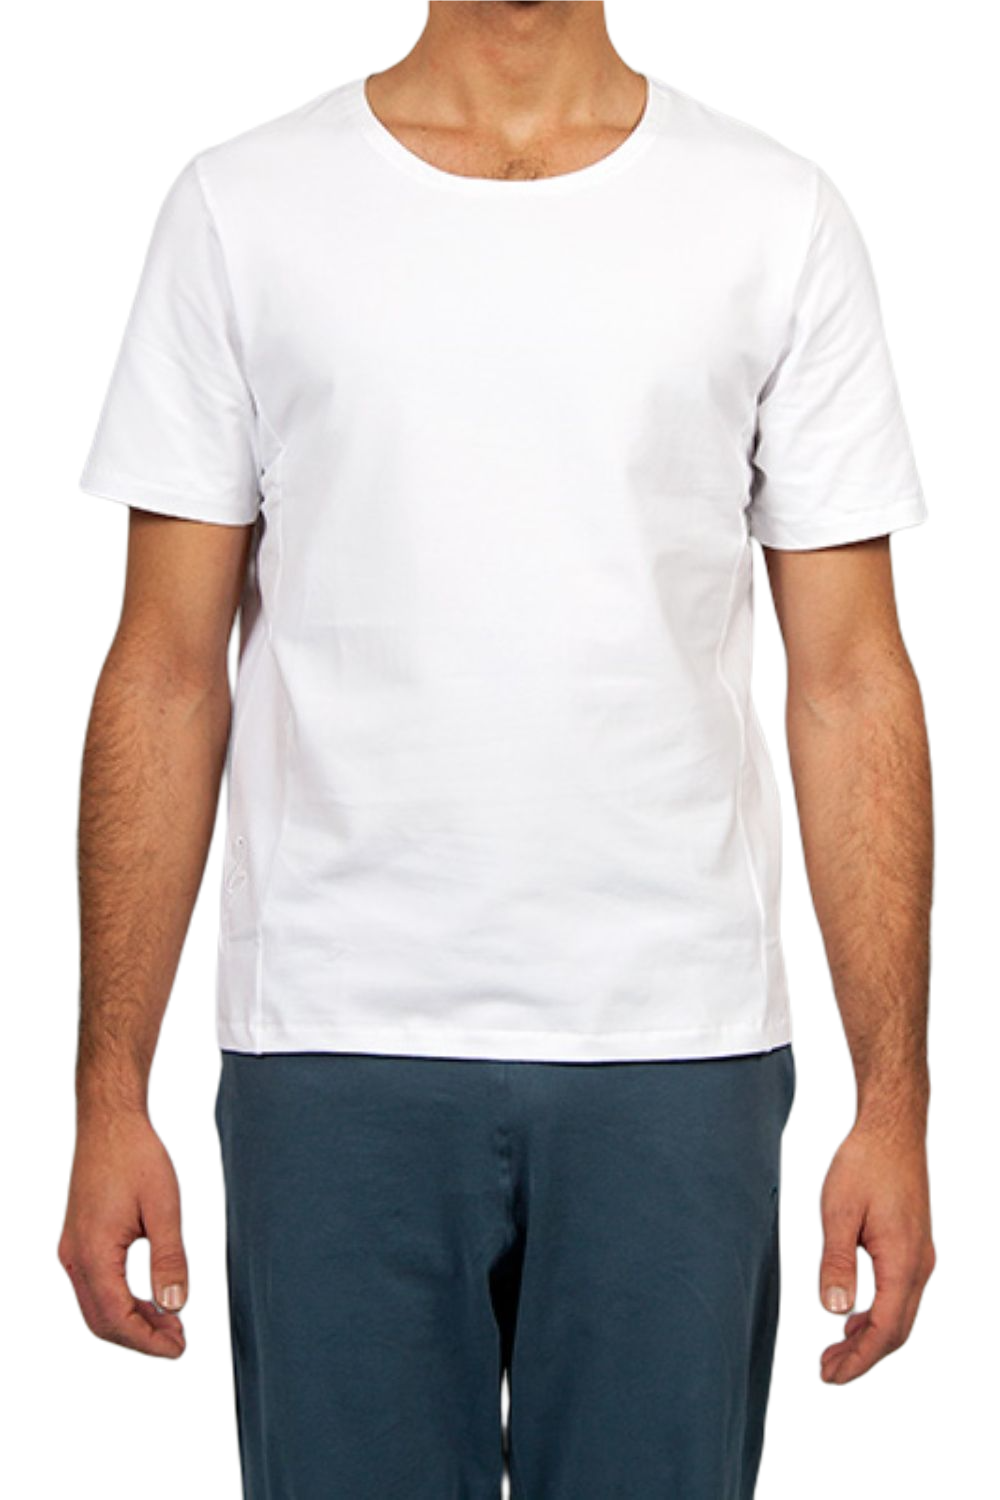 Mahan Shirt für Männer Weiss